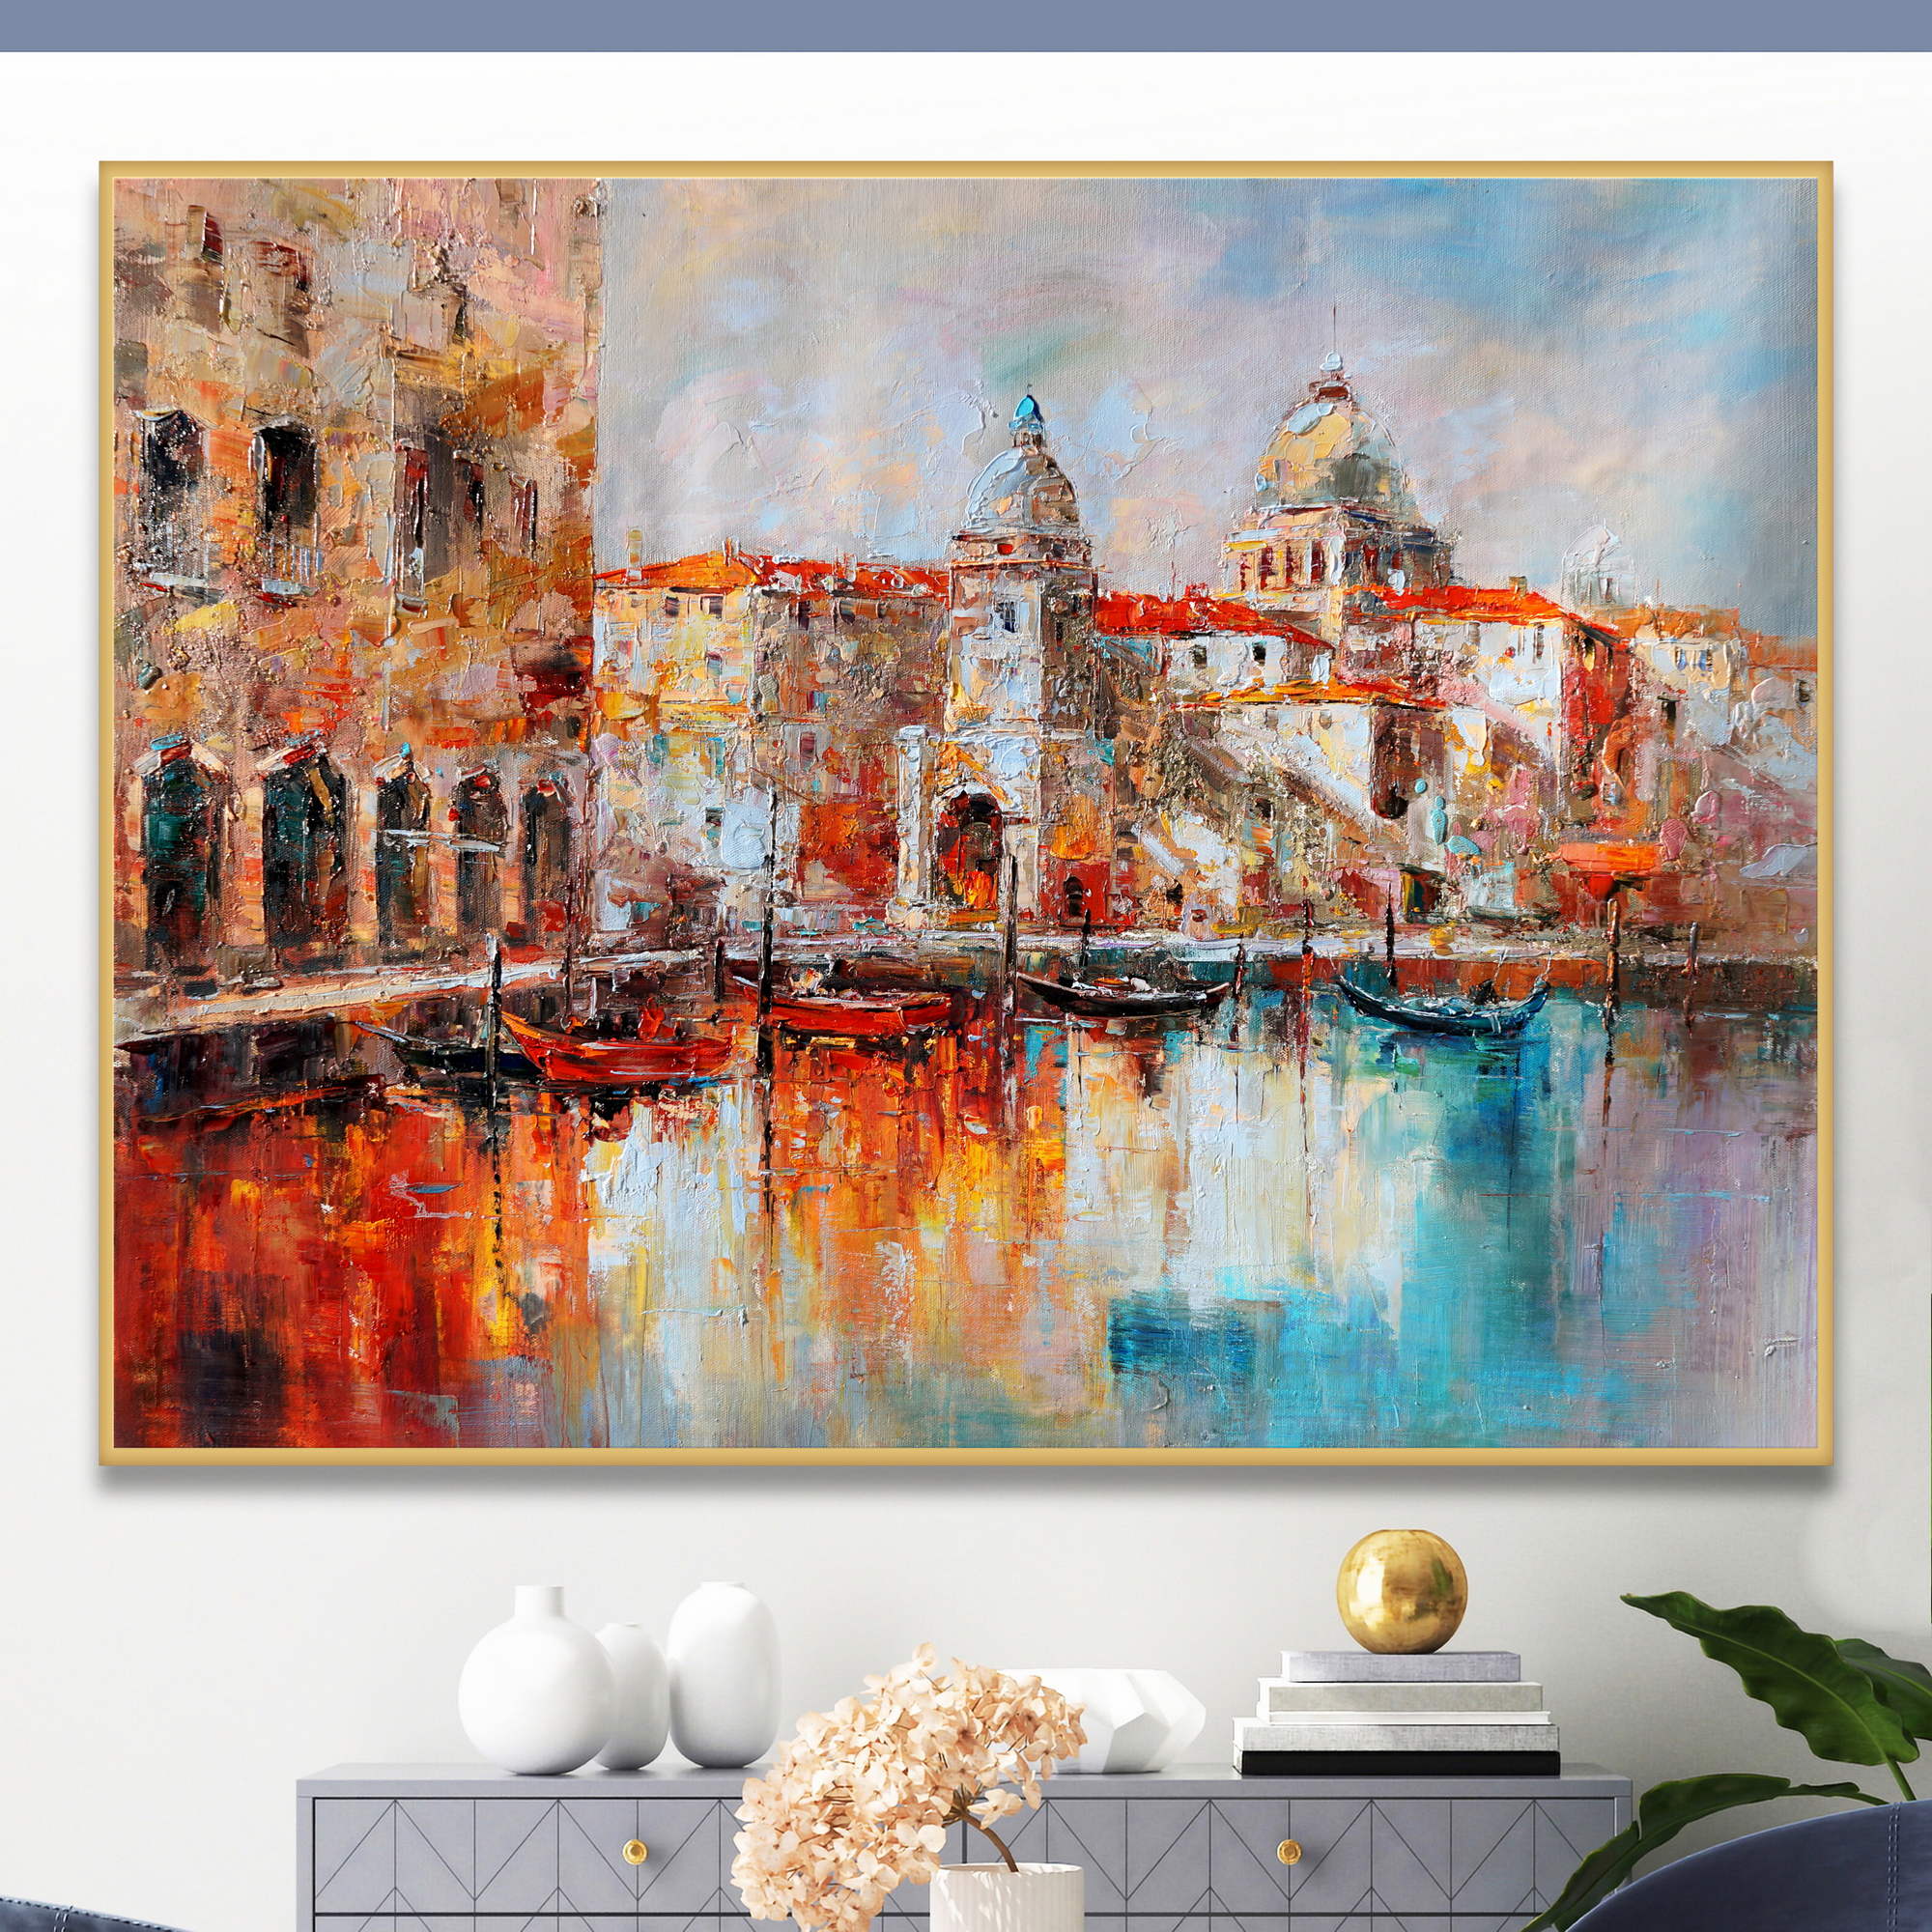 Dipinto asstratto di uno scorcio di Venezia con gondole e edifici storici